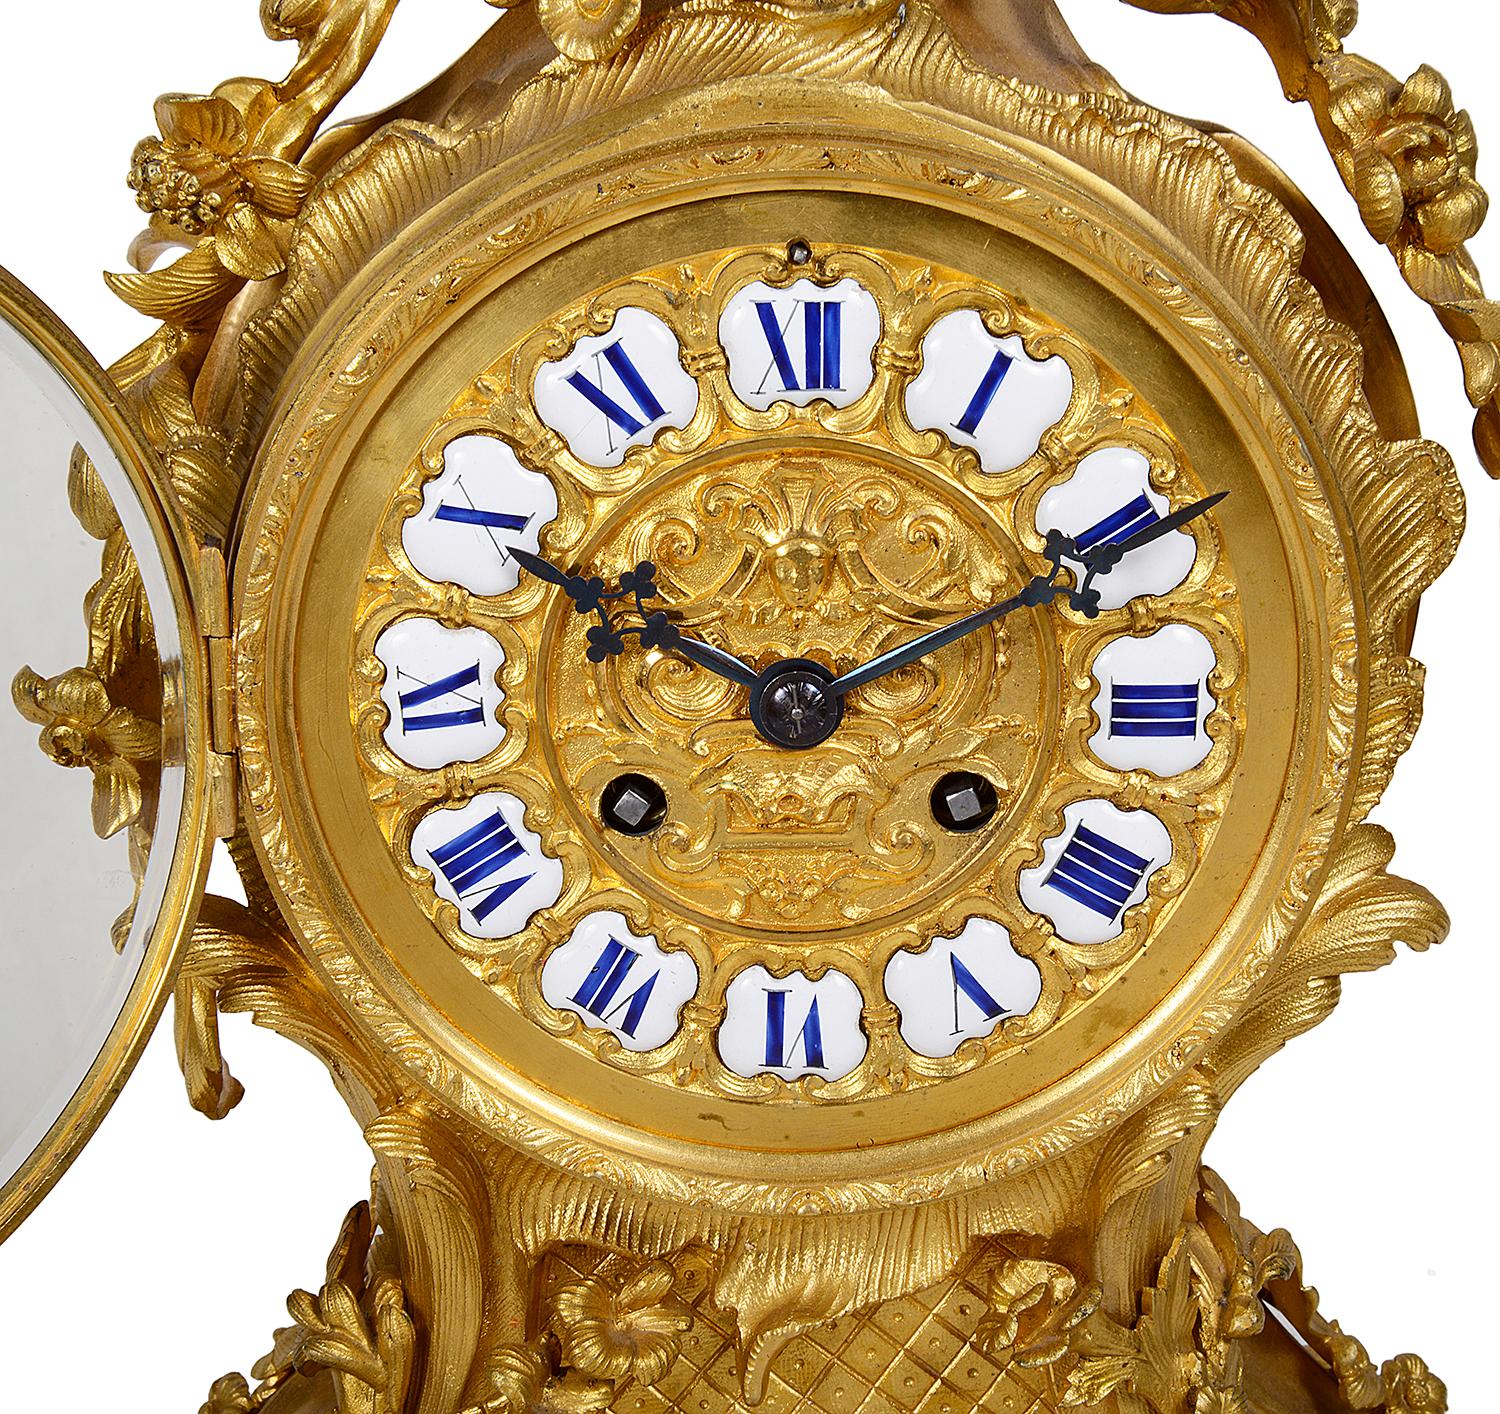 Eine sehr gute Qualität 19. Jahrhundert Französisch vergoldet Ormolu Louis XVI-Stil Kaminsims Uhr, mit wunderbaren scrolling foliate Dekoration im Rokoko-Stil, Girlanden von Blumen drapiert beiden Seiten der Uhr. Römische Ziffern in weißer und